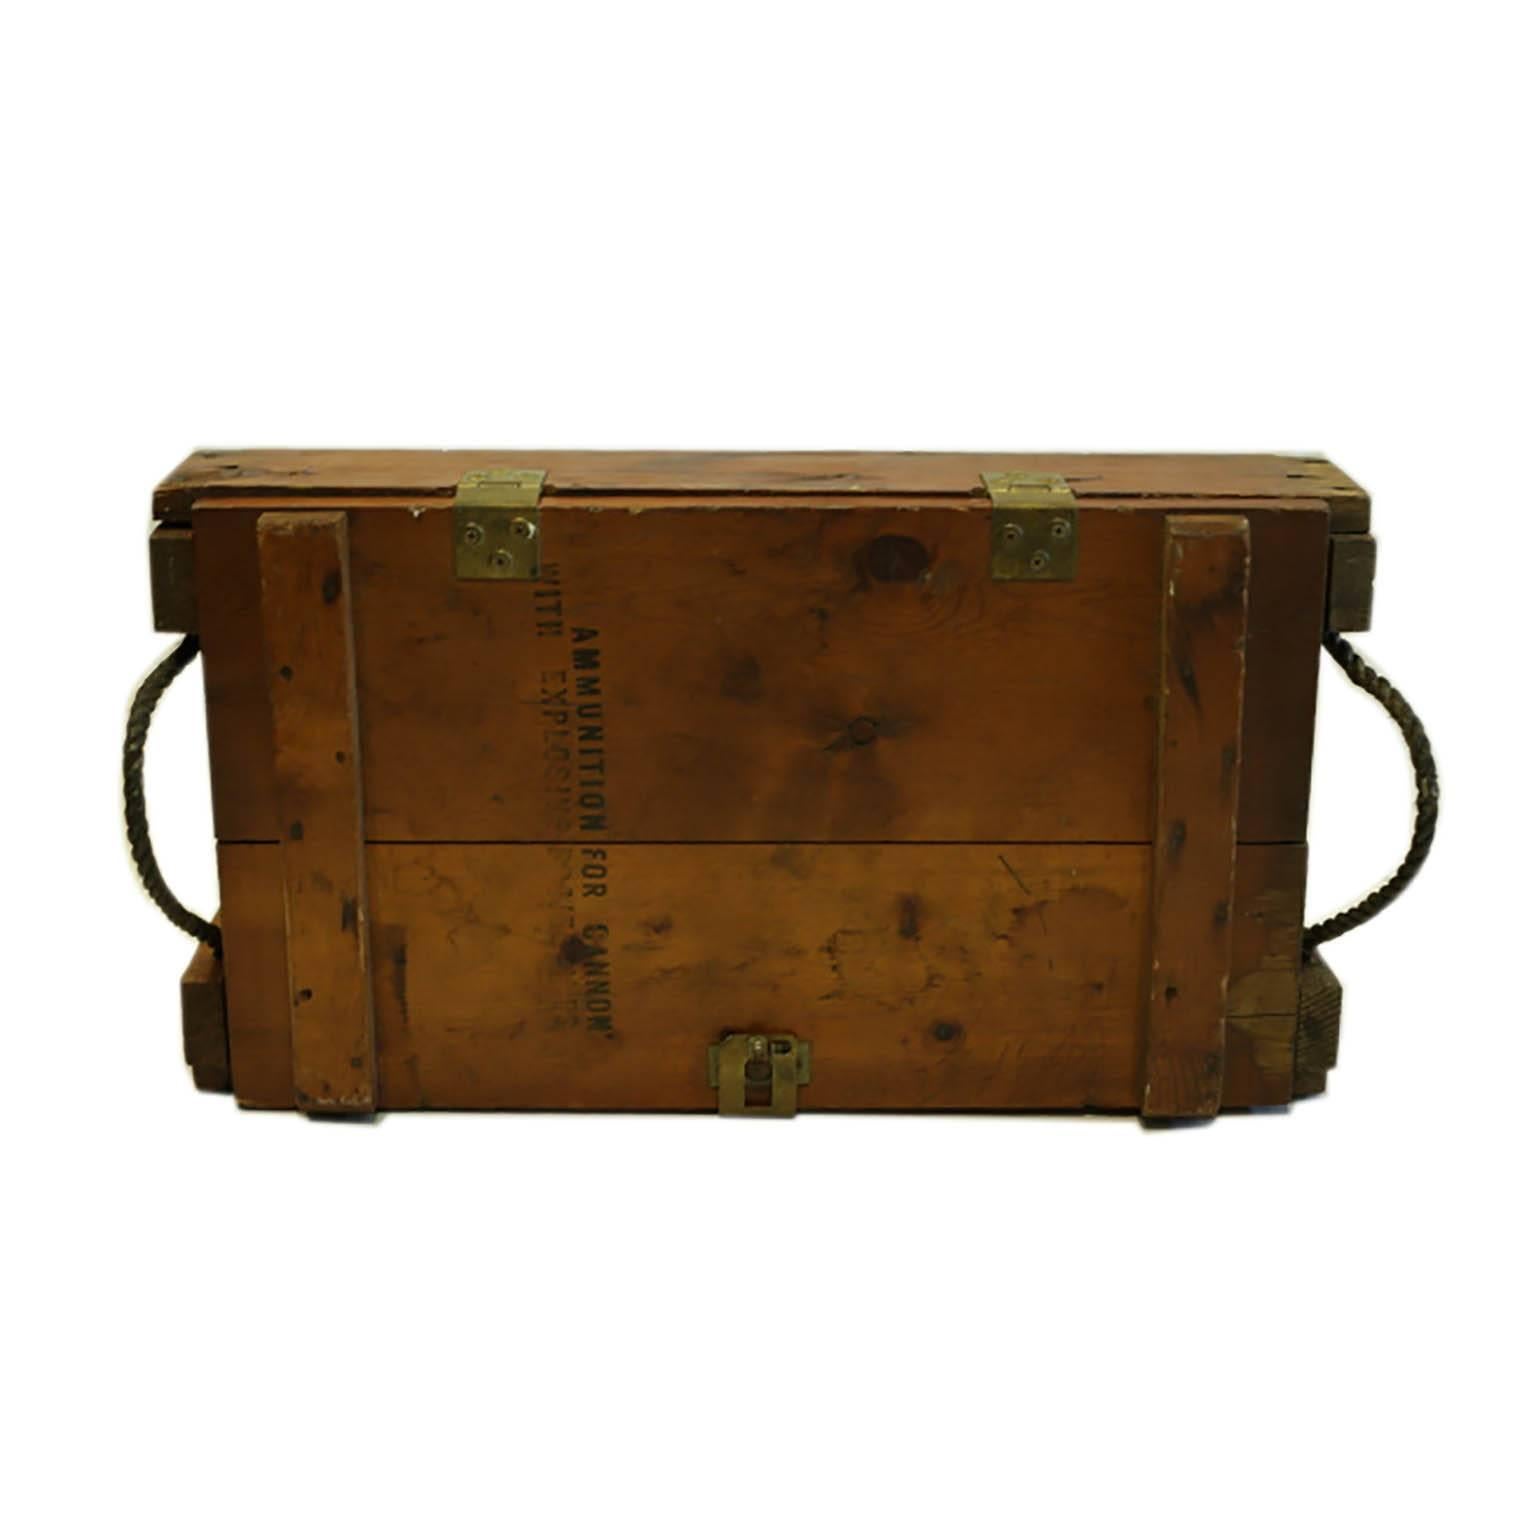 WW11 Wooden Mortar Cartidge Box, circa 1940s 1